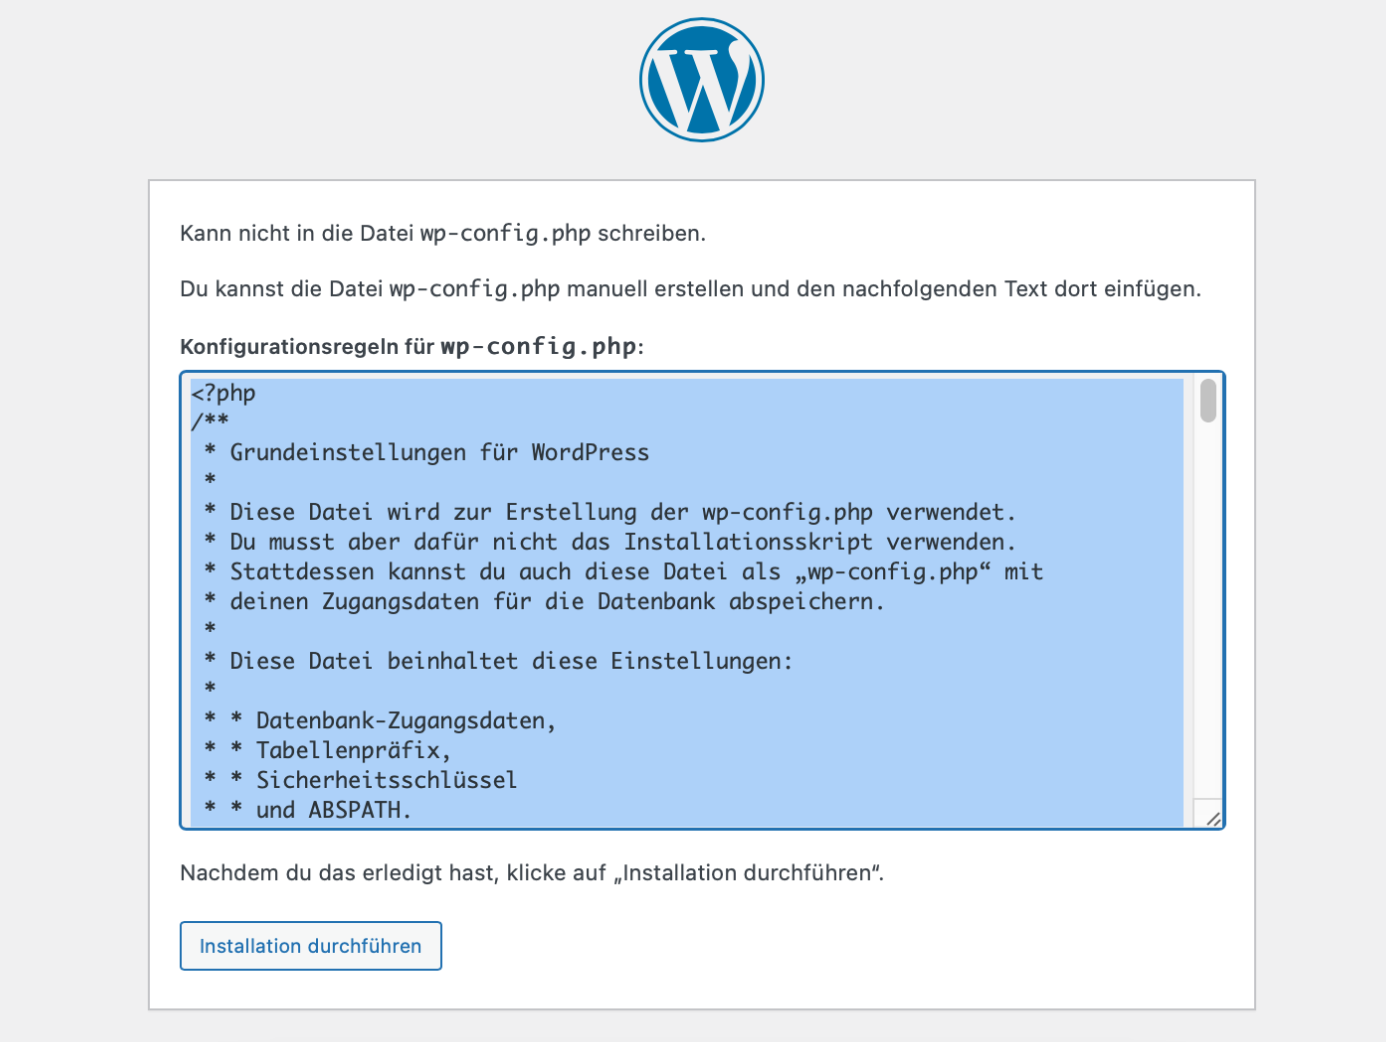 Secreenshot: während der Installation von Wordpress wird der Inhalt für die Datei wp-confi.php forgeschlagen